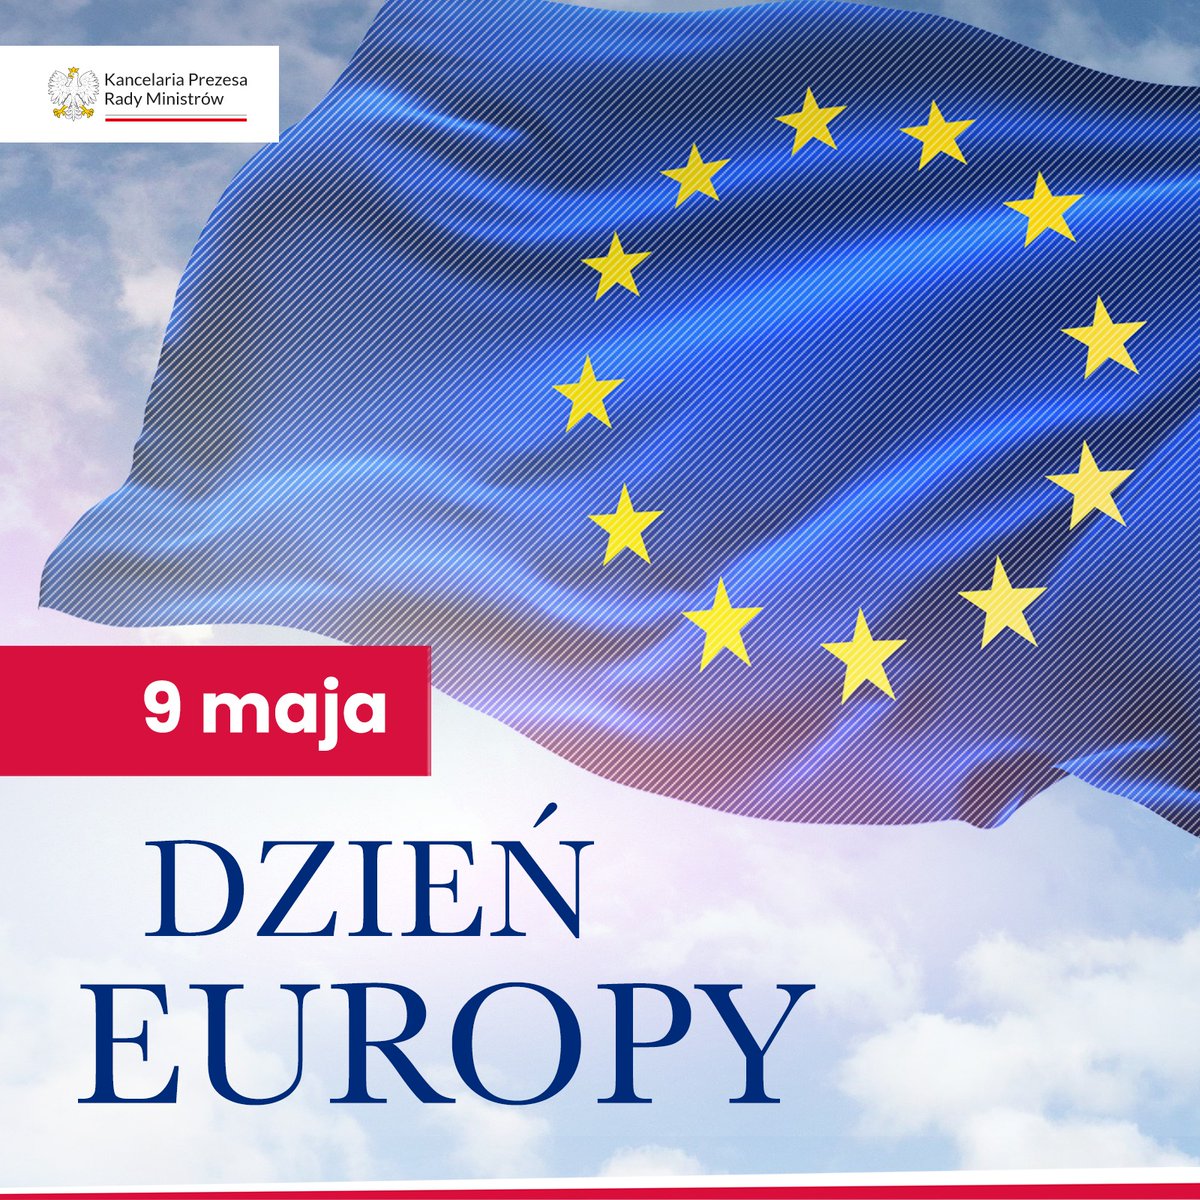 📆 Dzisiaj, 9 maja, obchodzimy Dzień Europy 🇪🇺 To święto pokoju i jedności w Europie. Upamiętnia ono rocznicę wygłoszenia historycznej deklaracji Schumana, w której Robert Schuman przedstawił swoją wizję nowej formy współpracy politycznej w Europie. Plan Schumana uważa się za…